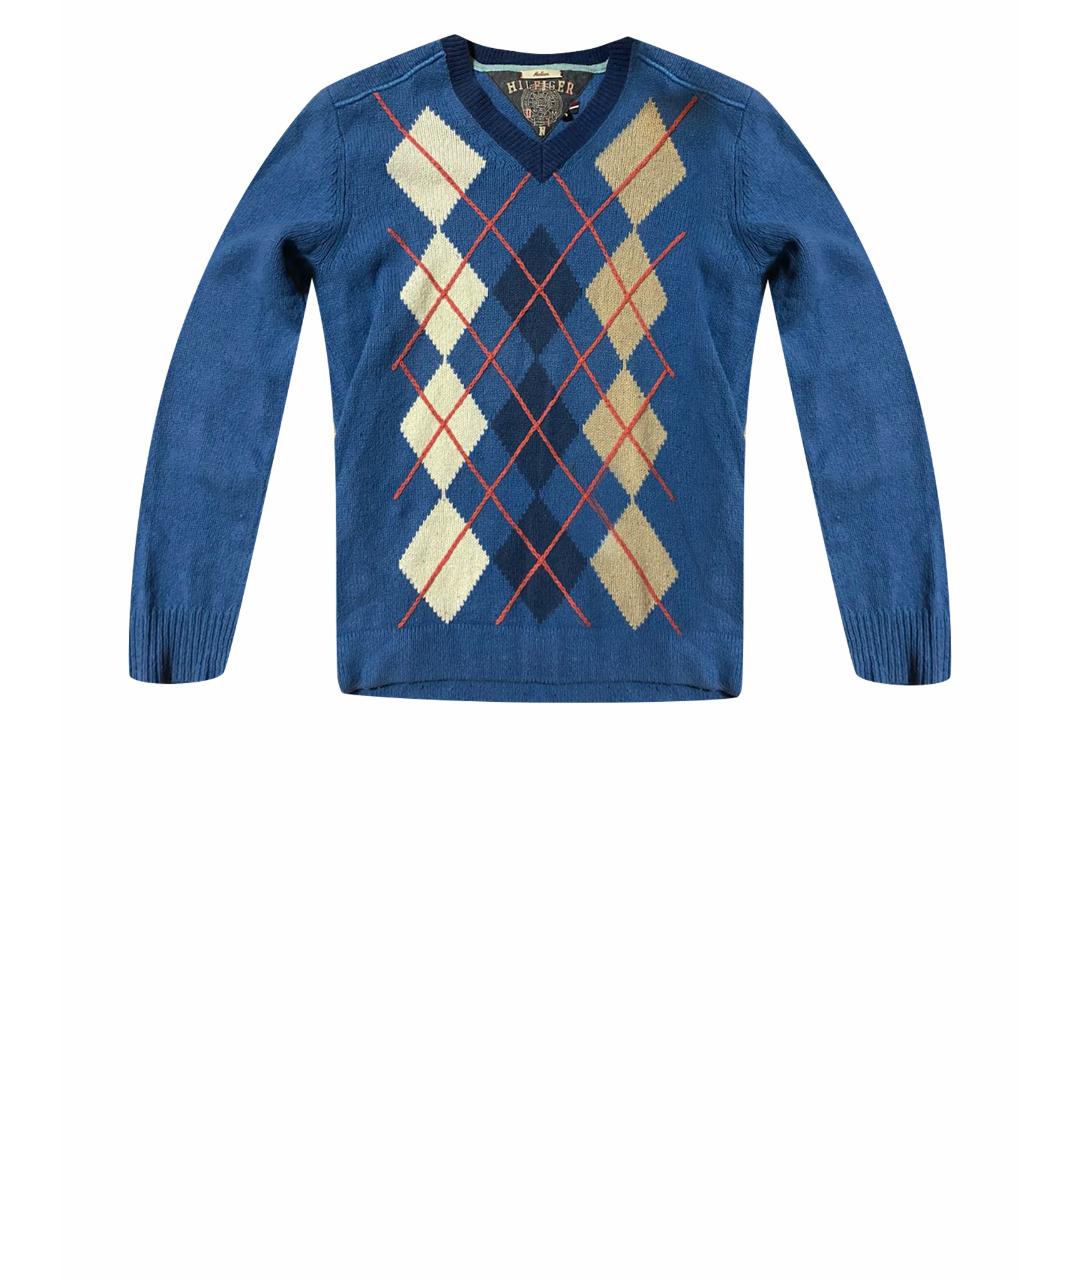 HILFIGER COLLECTION Синий хлопковый джемпер / свитер, фото 1